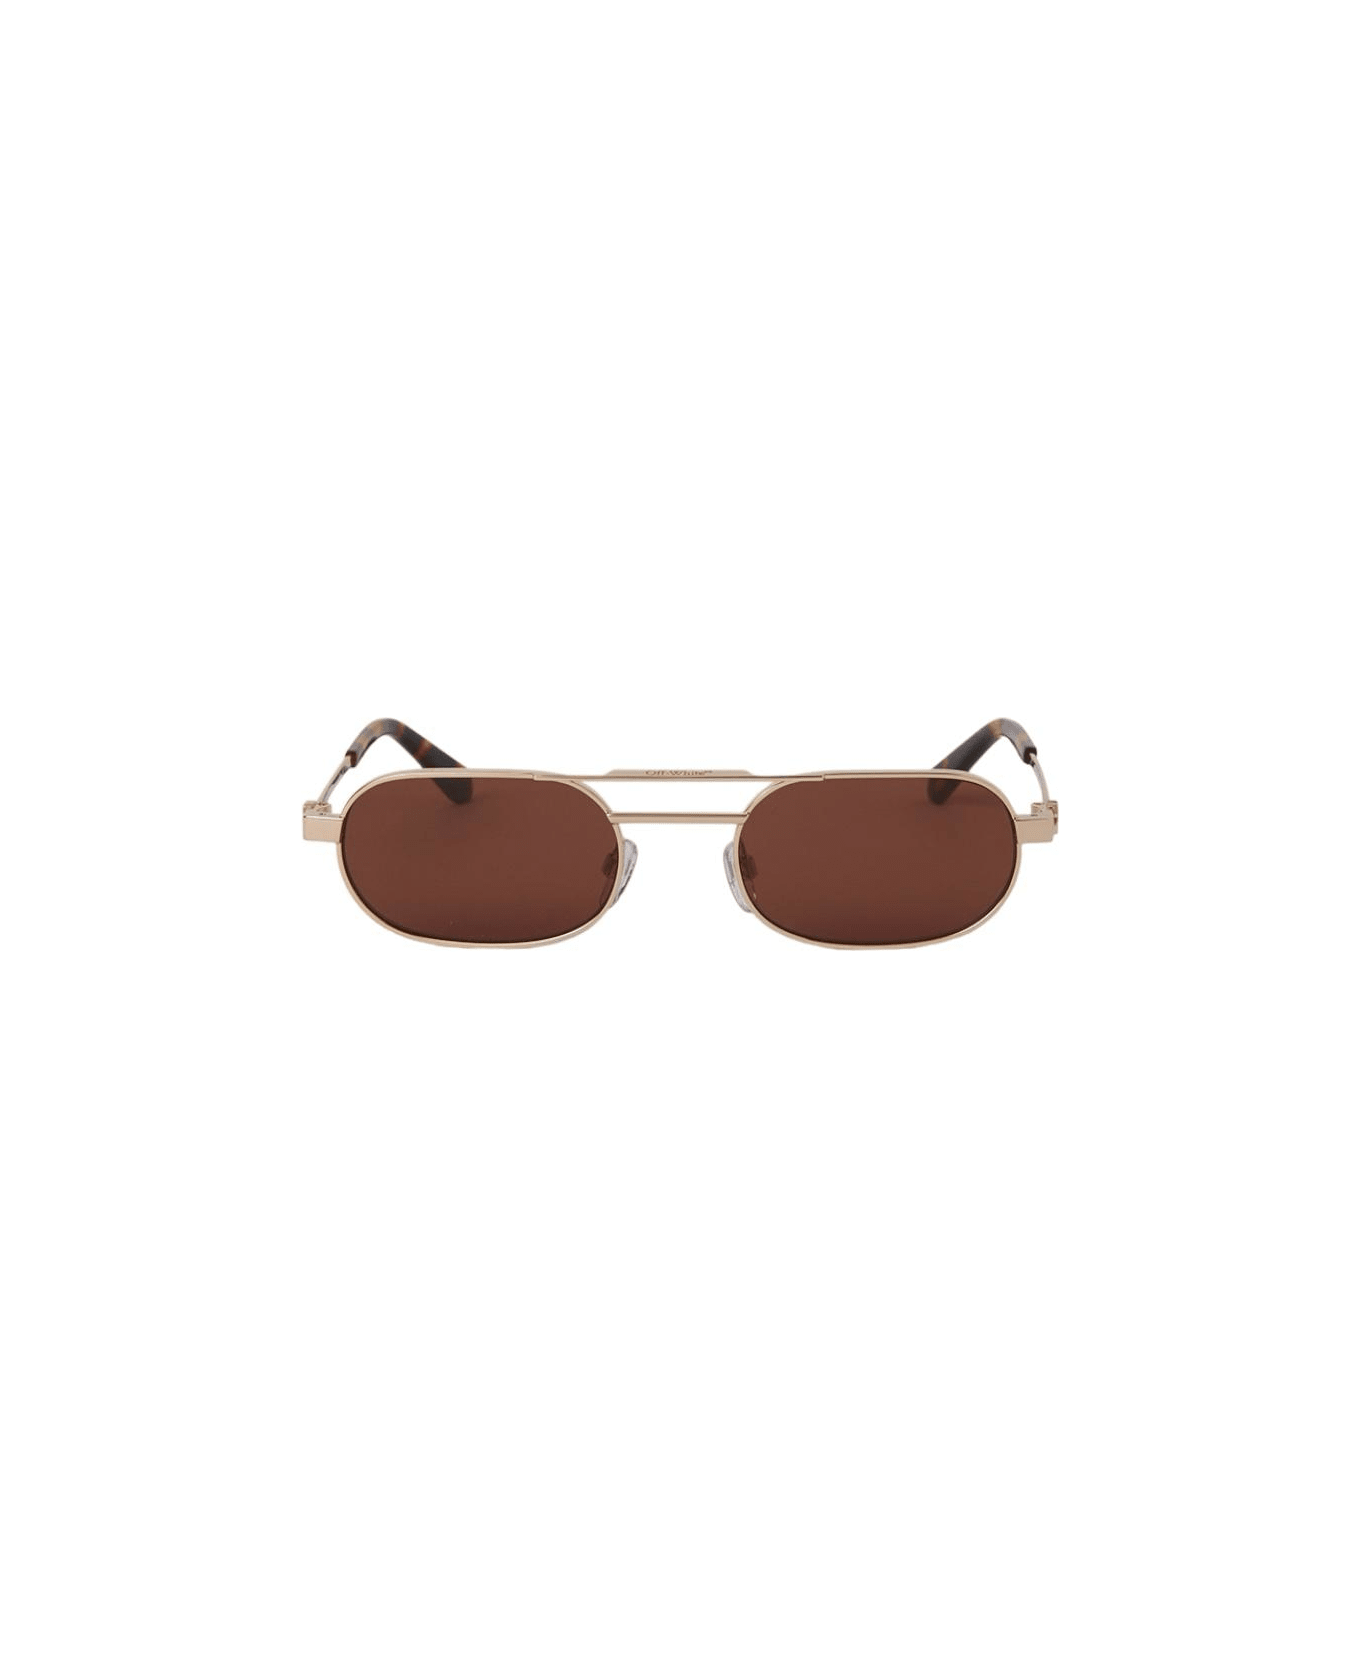 Off-White Vaiden - Oeri123 Sunglasses サングラス